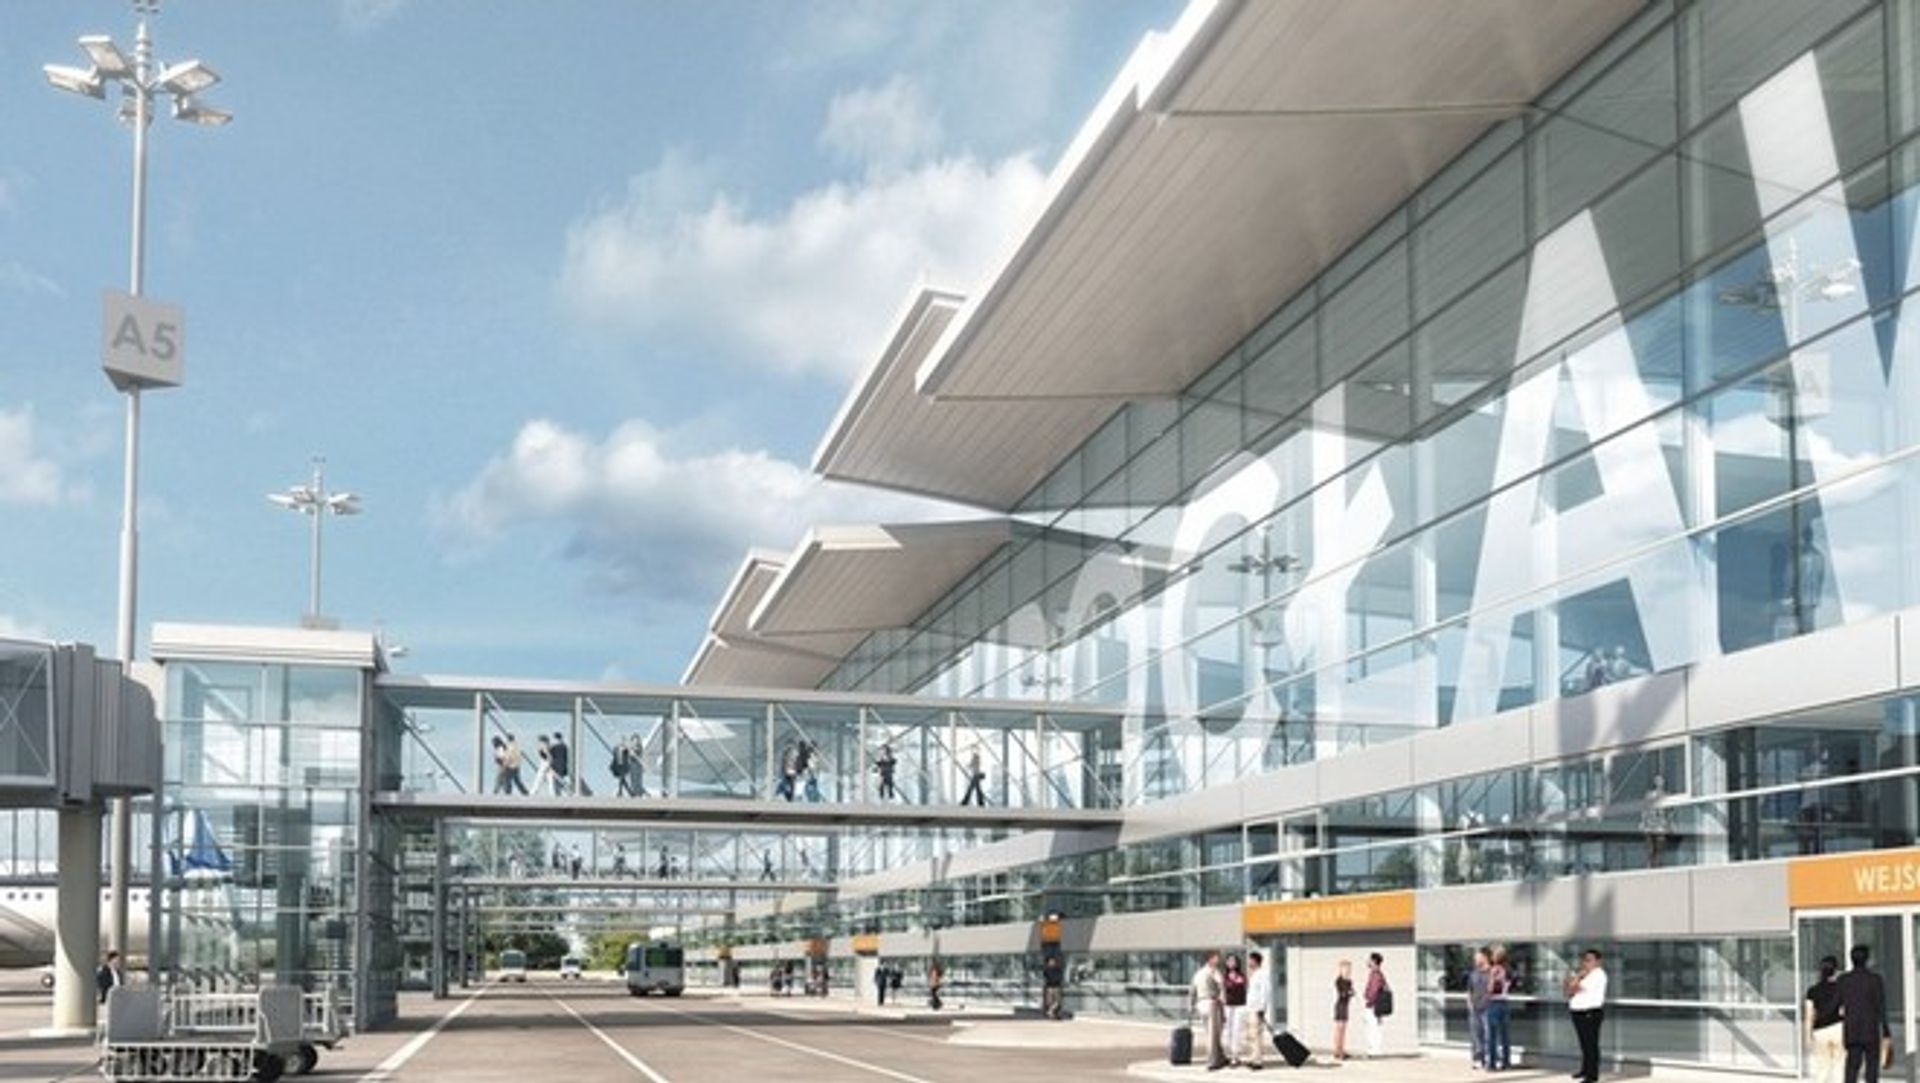  Nowy terminal lotniska zostanie otwarty pod koniec lutego